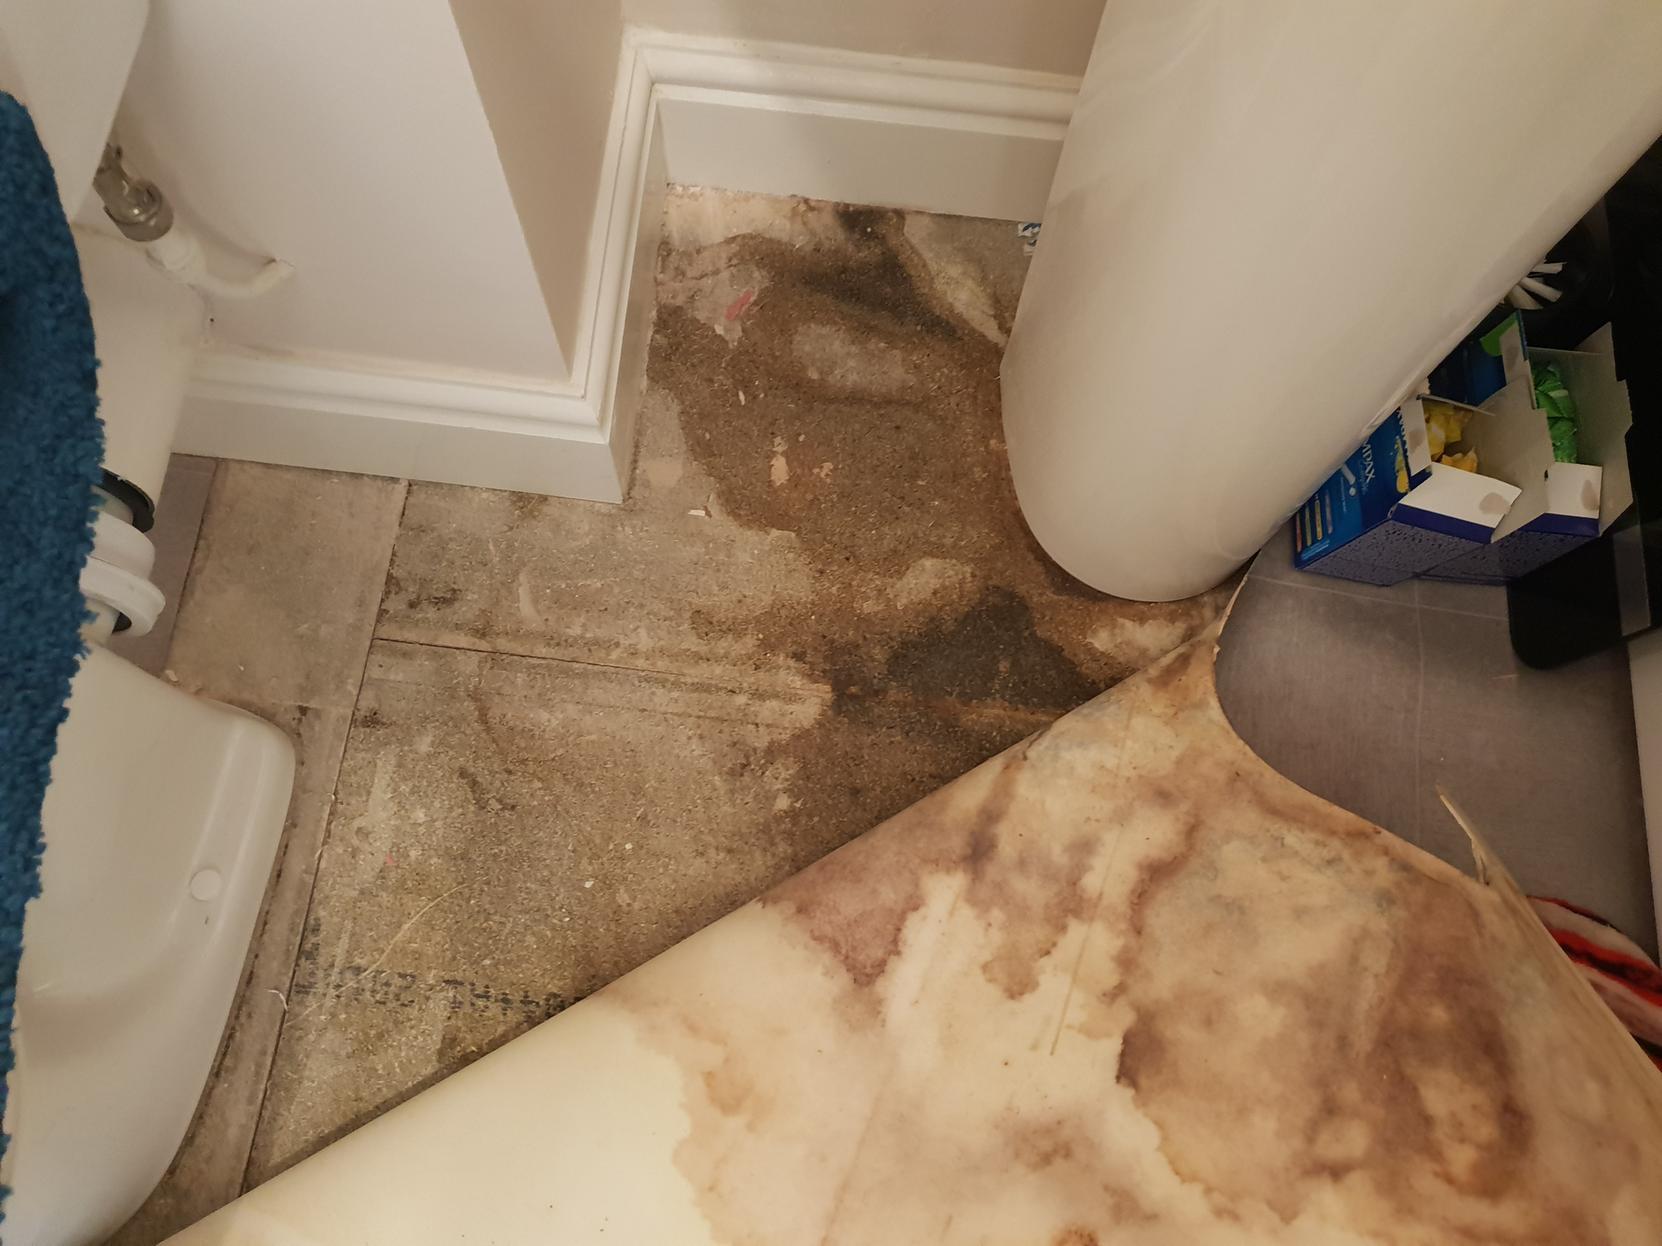 Poor plumbing left Liam Underwood and Natalia Dresler's floor damaged